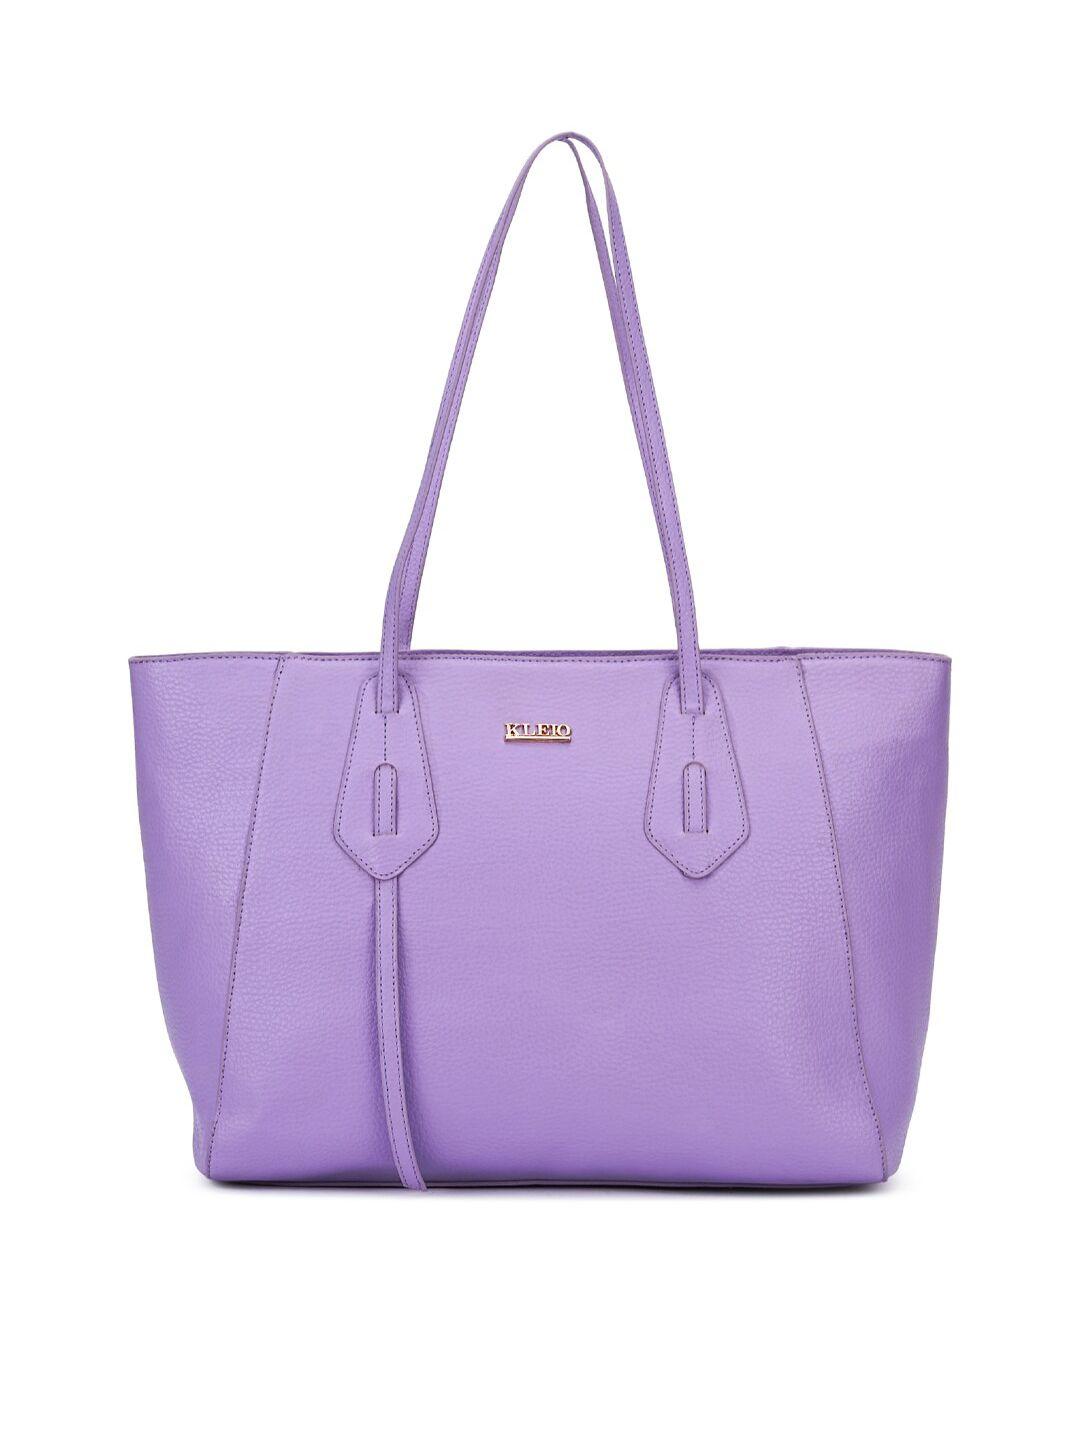 kleio purple pu structured shoulder bag with tasselled